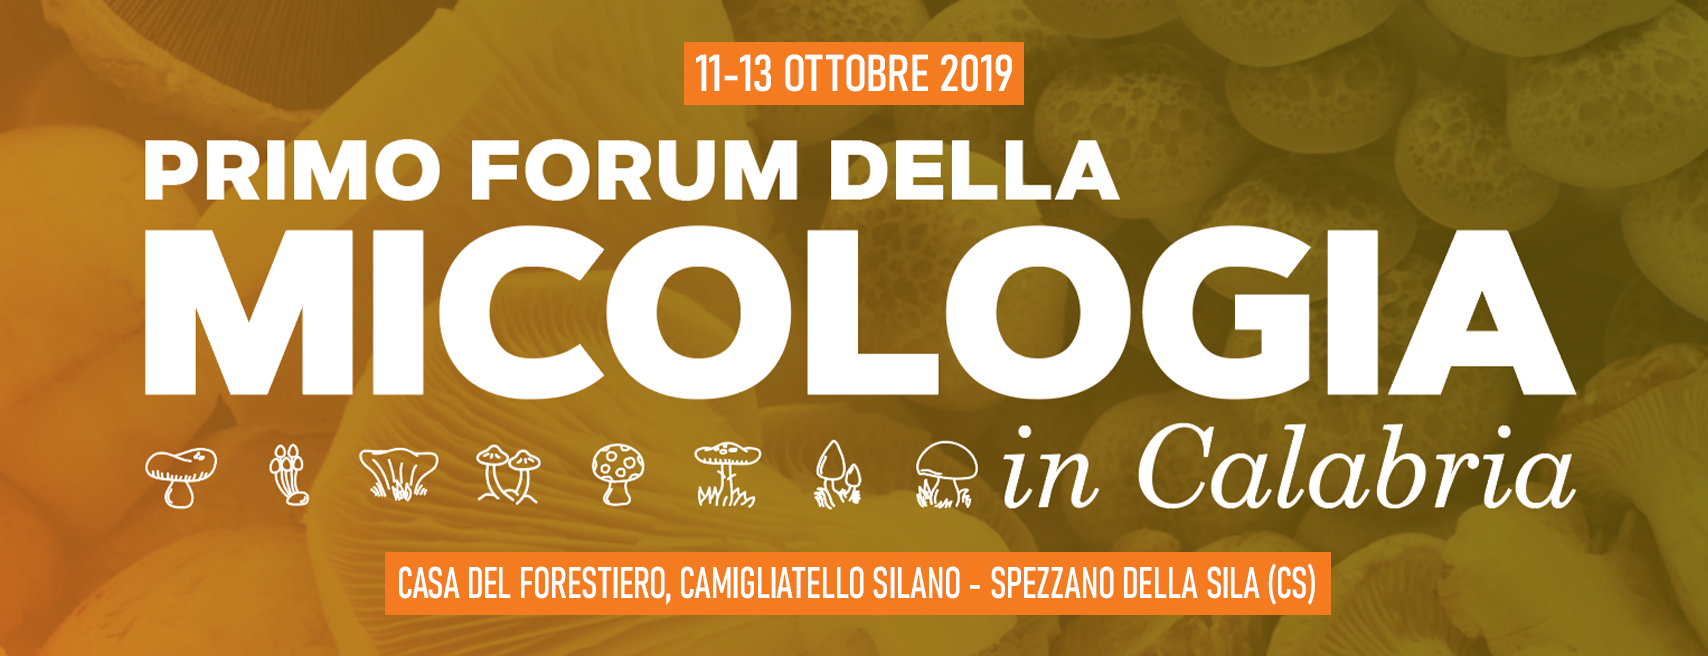 Forum della Micologia in Calabria